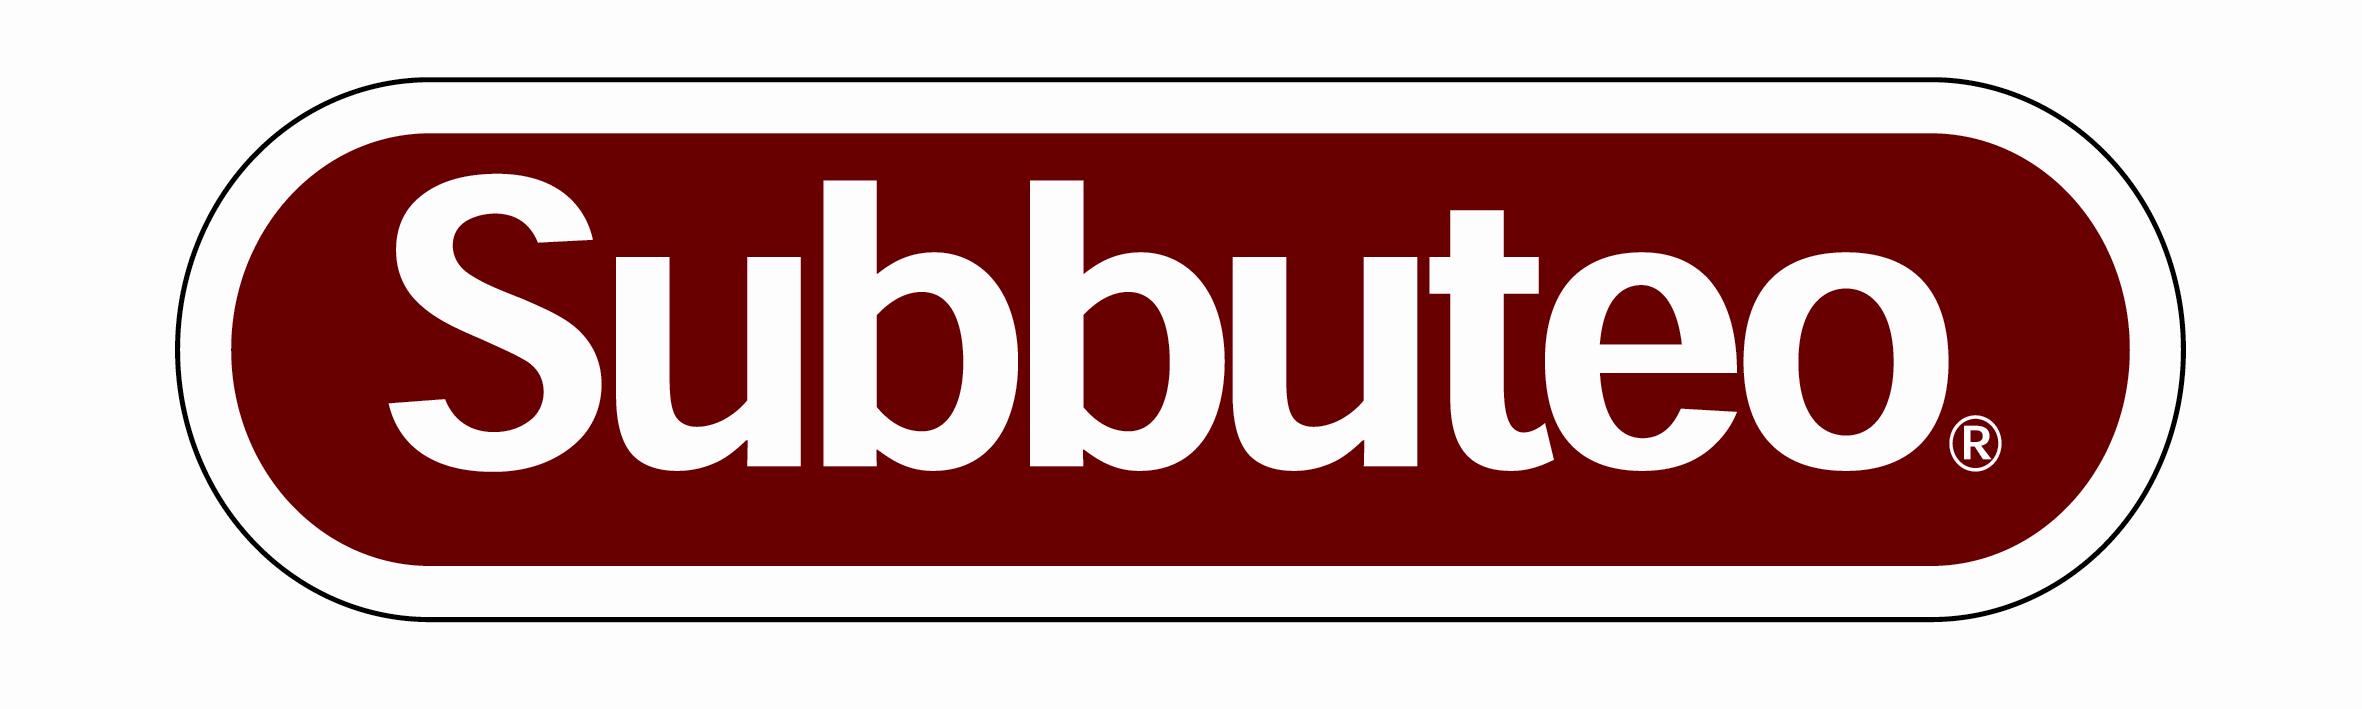 Subbuteo Logo photo - 1